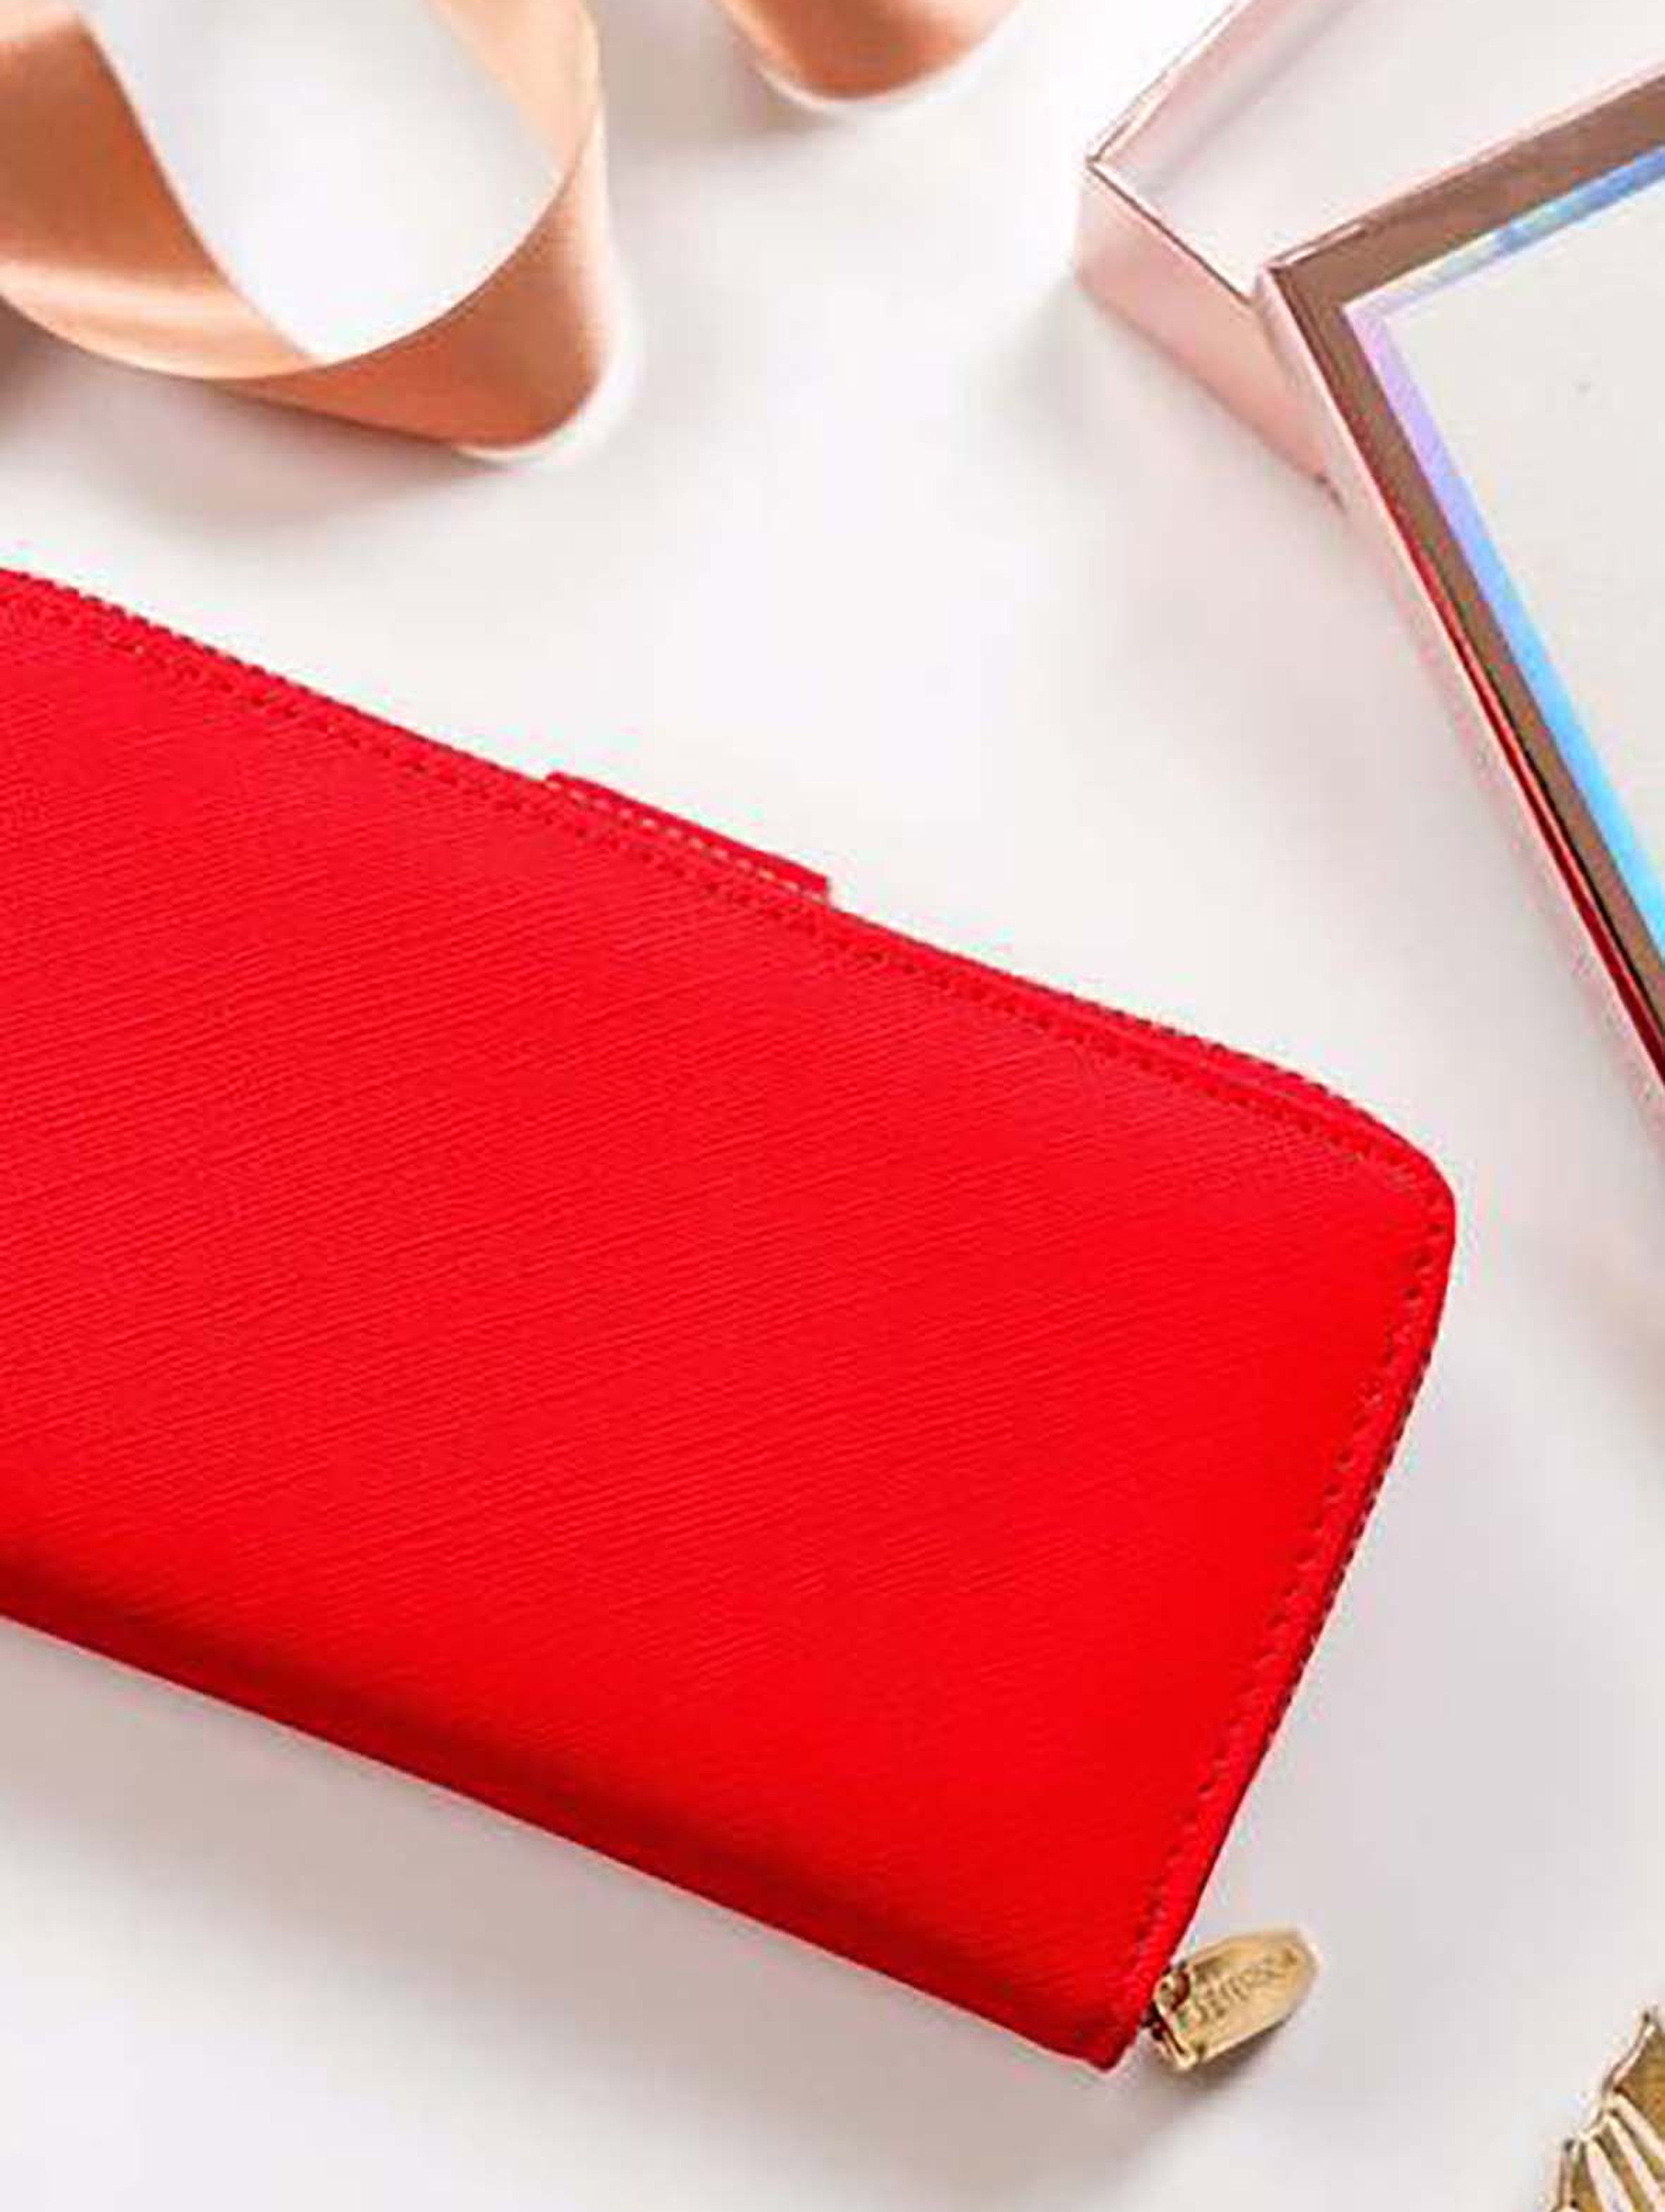 Duży, pionowy portfel damski czerwony ze skóry ekologicznej - Peterson